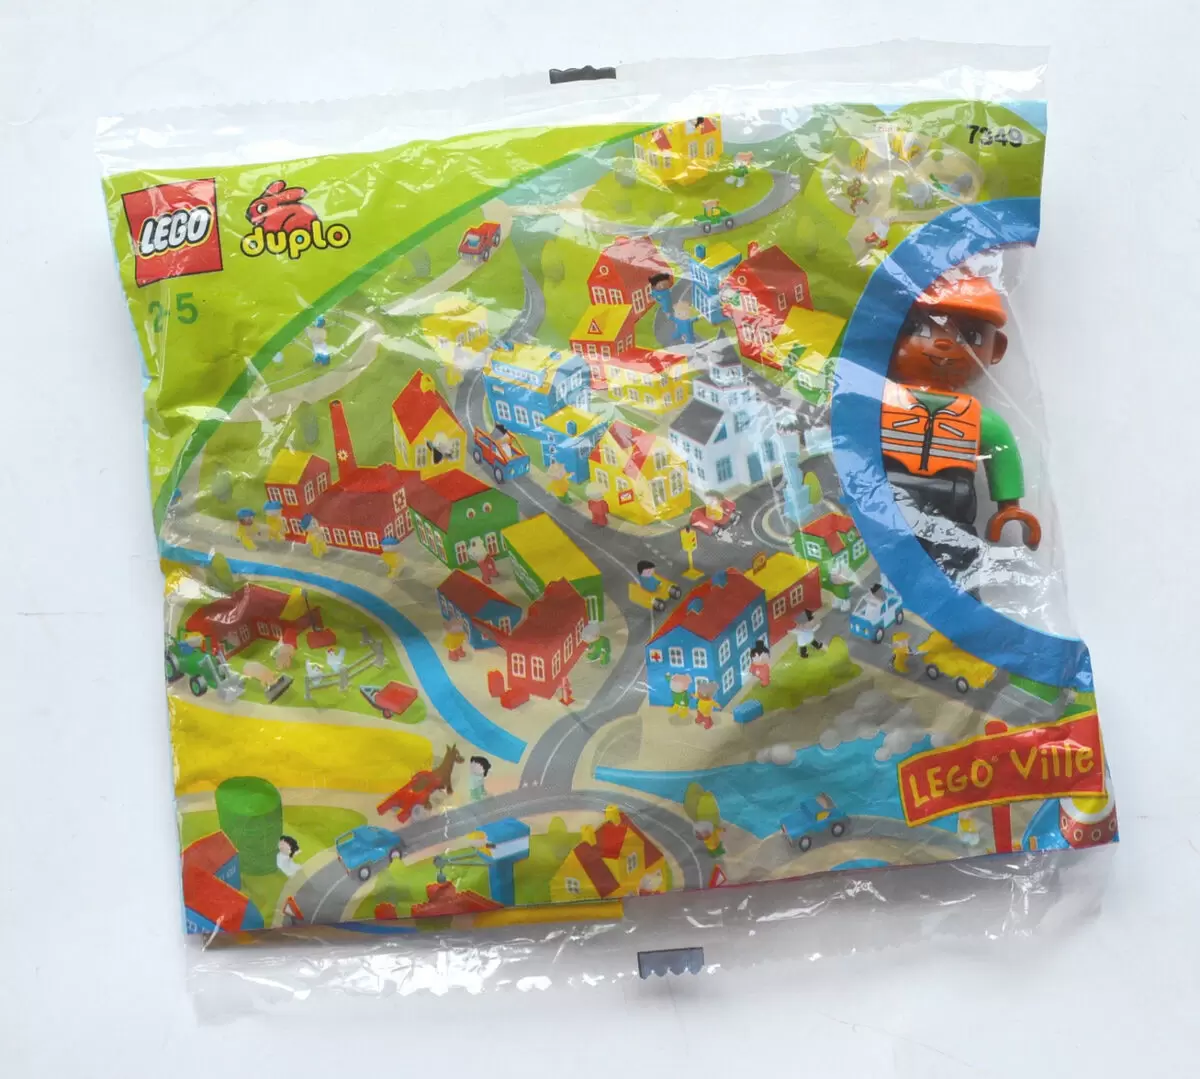 LEGO Duplo - Duplo Character (Random Bag)